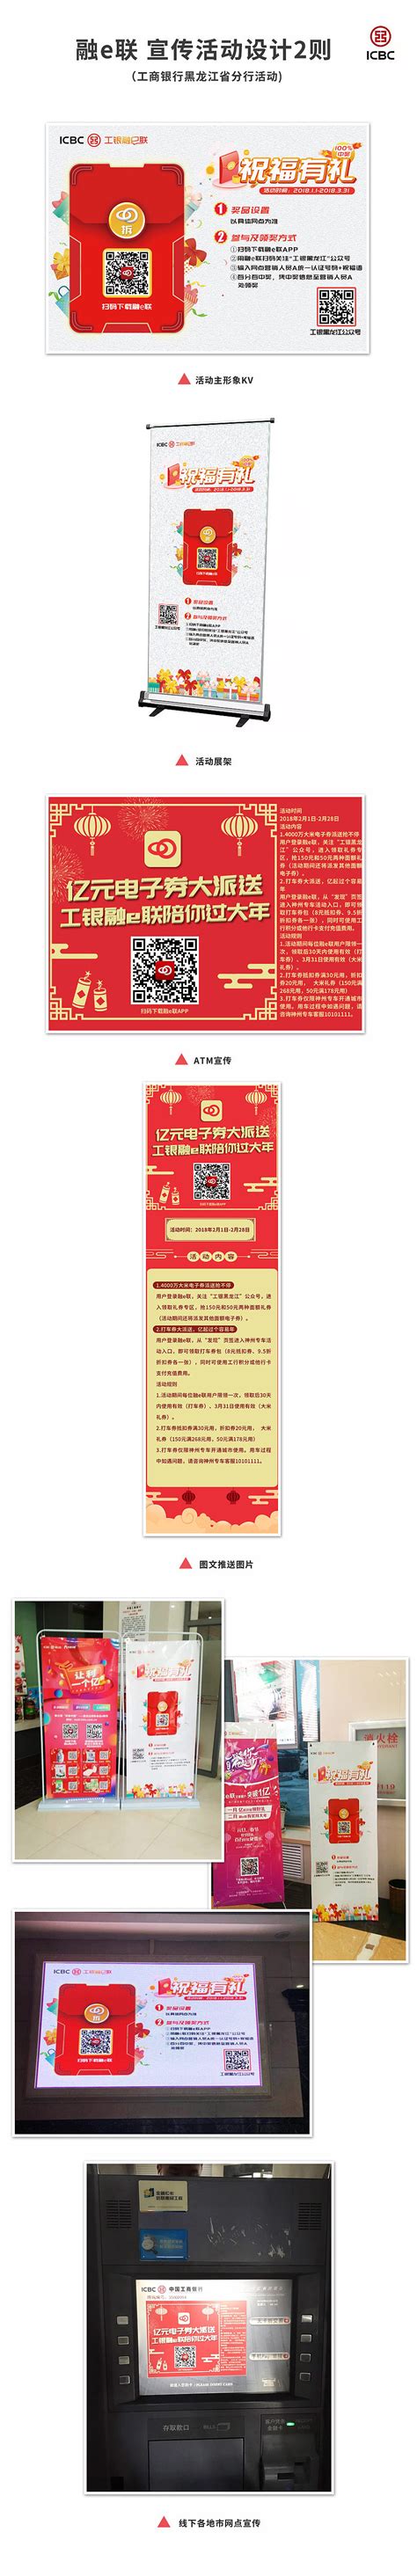 2020黑龙江省品牌价值评价信息发布 友搏药业携手迪龙制药双双上榜